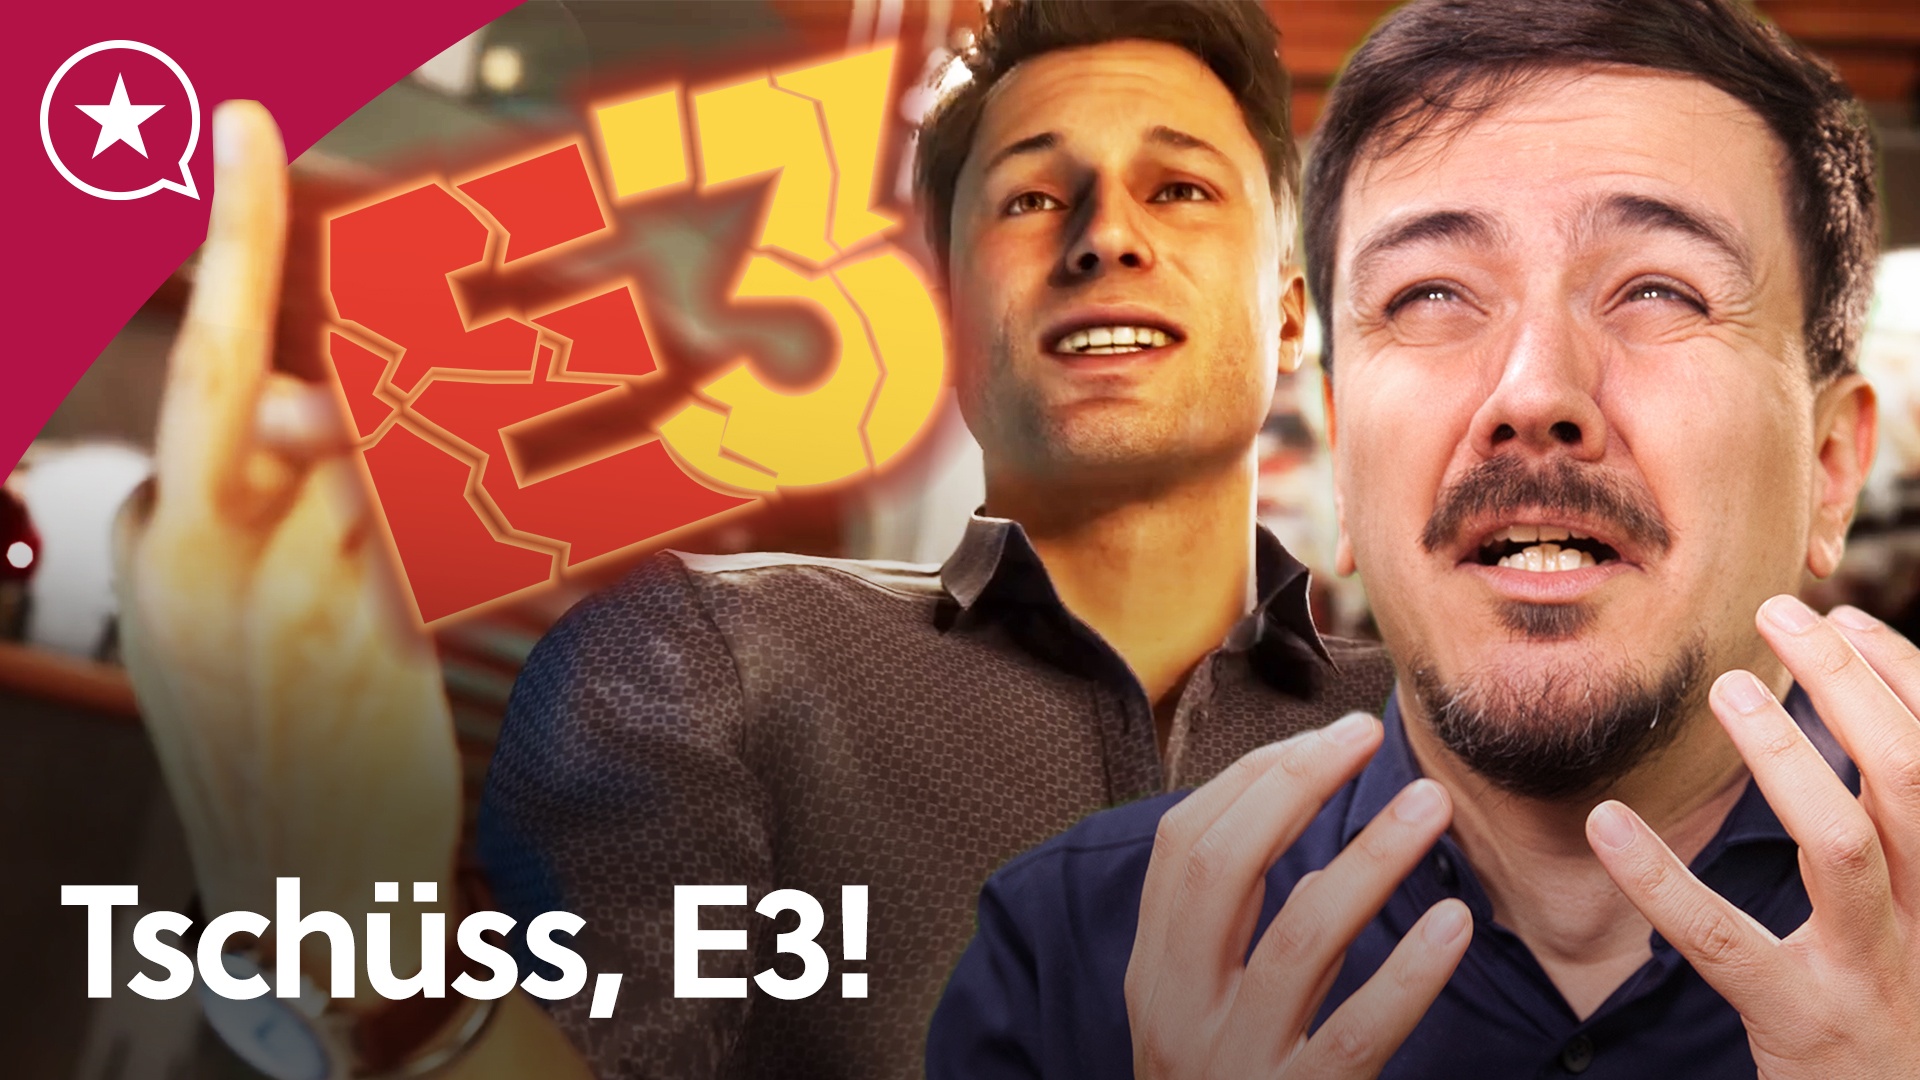 #Die E3 ist tot, na und?